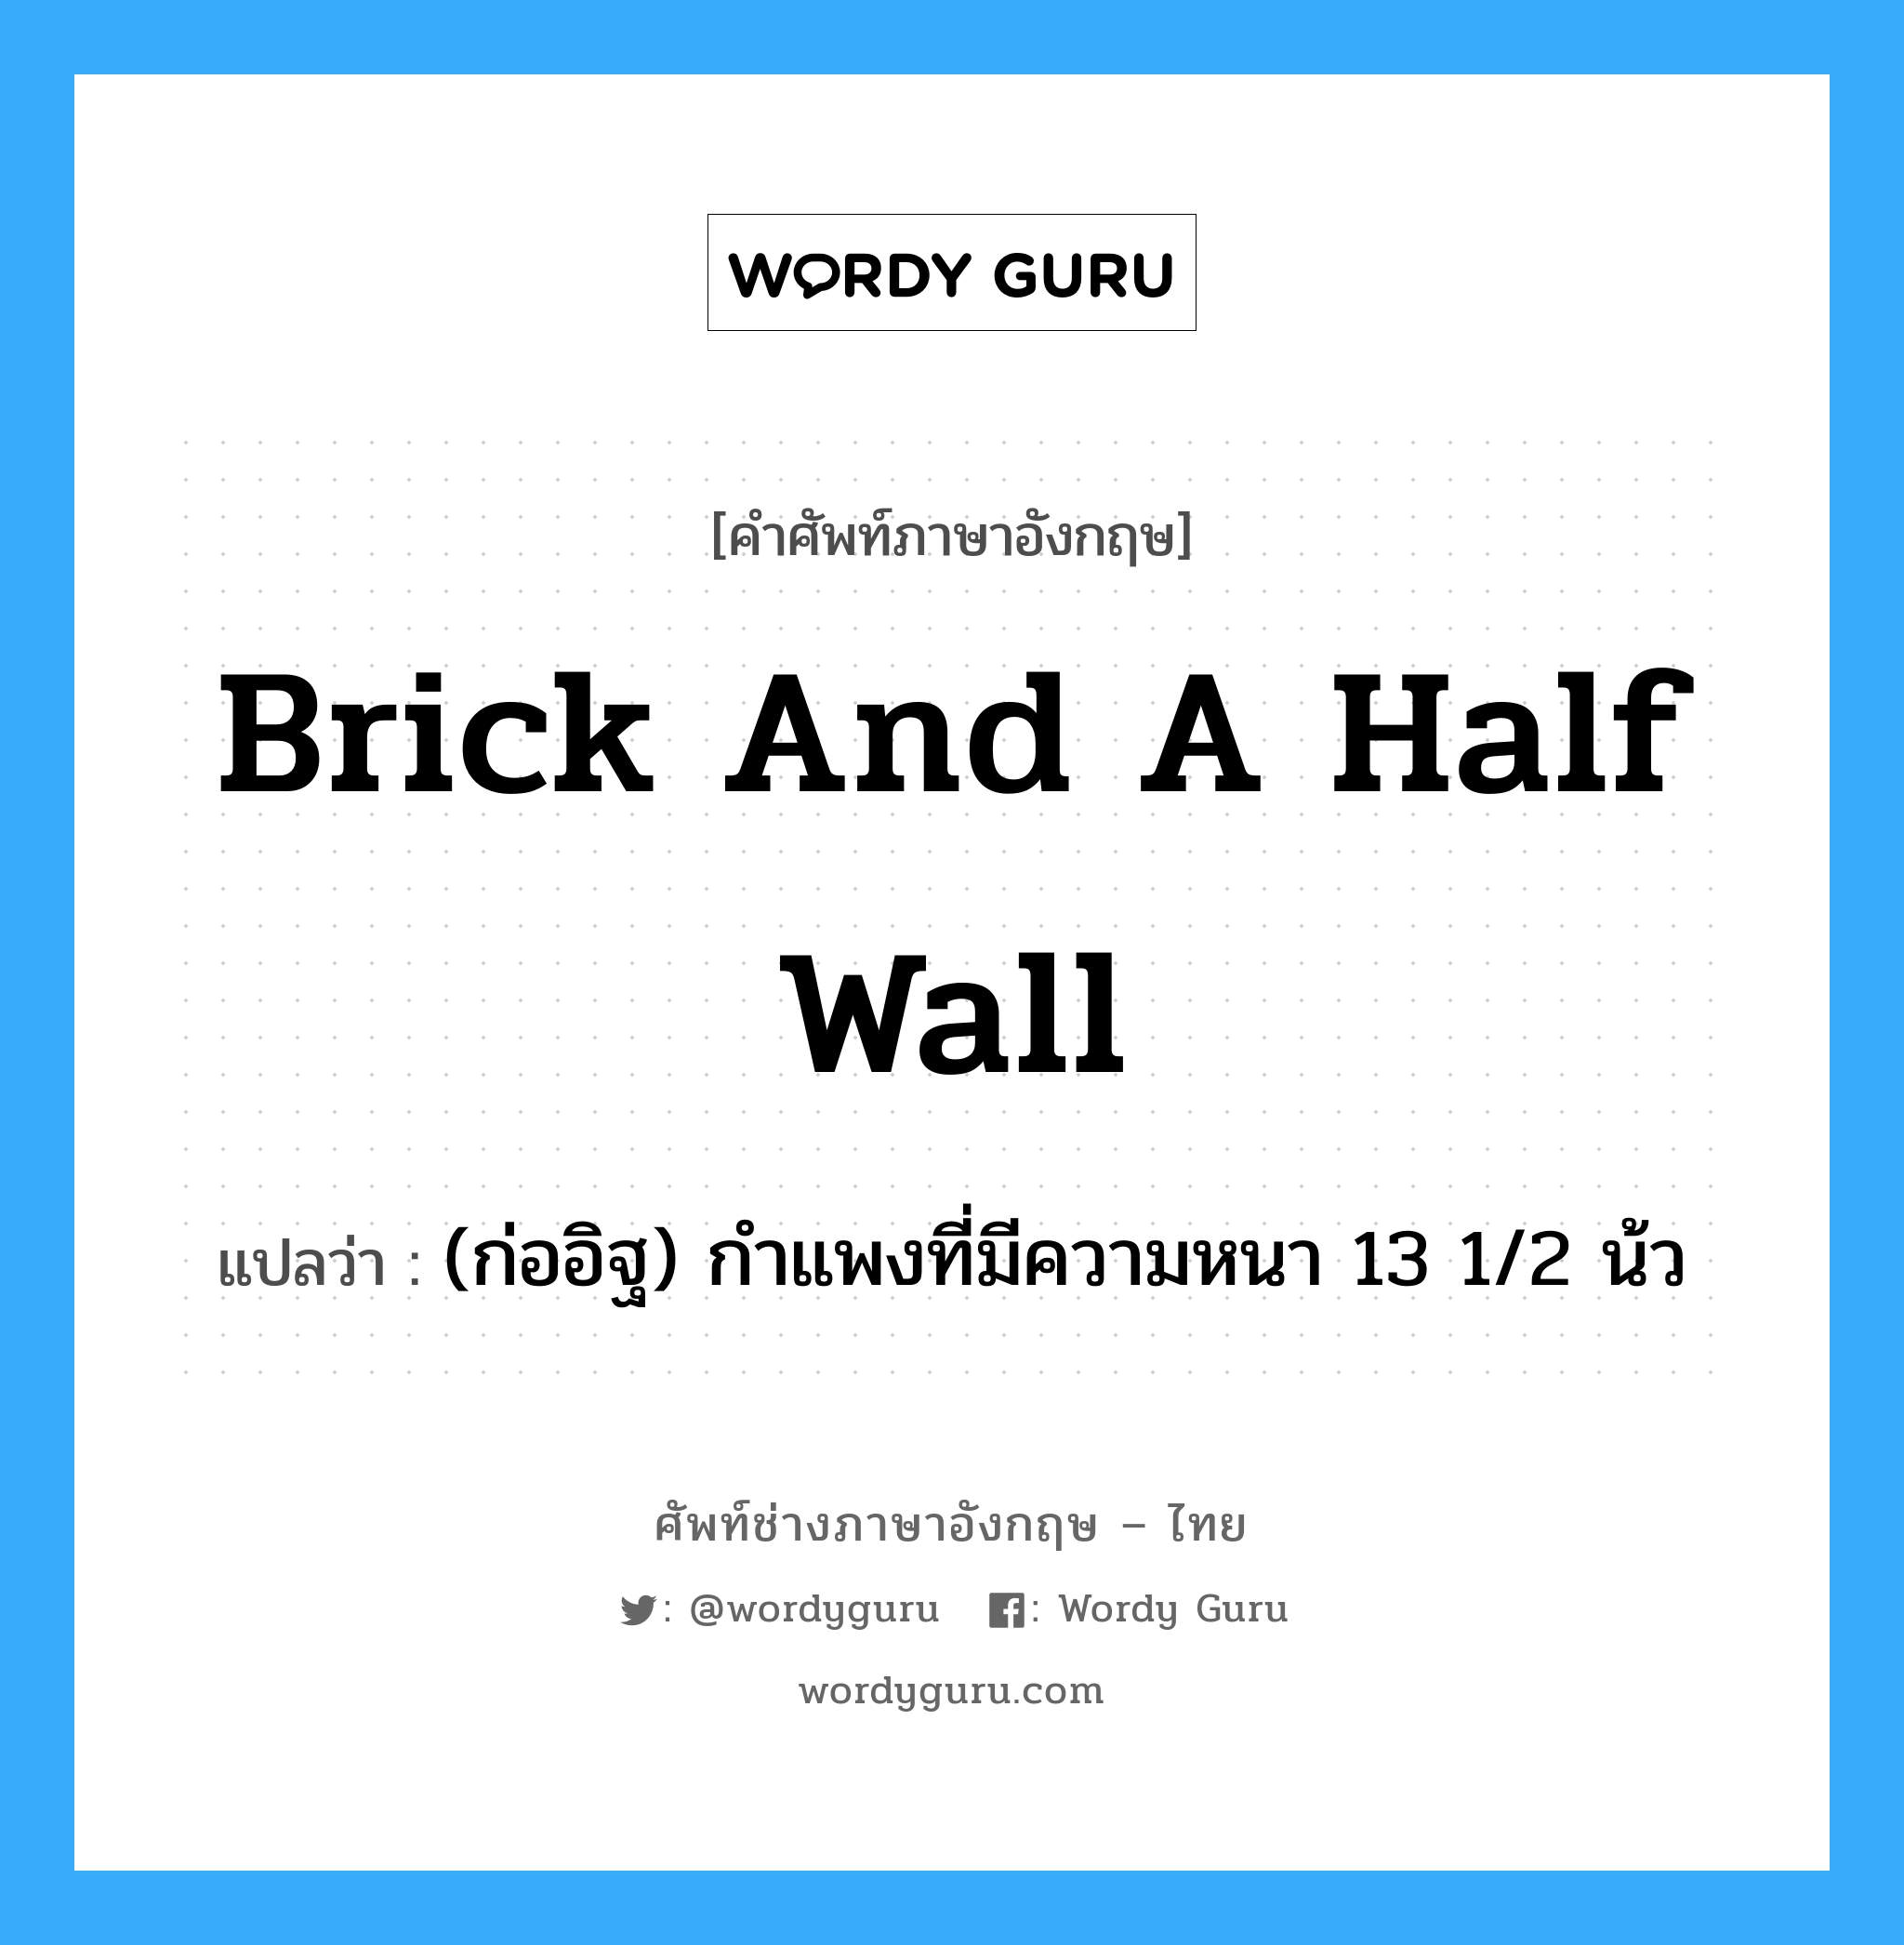 (ก่ออิฐ) กำแพงที่มีความหนา 13 1/2 น้ว ภาษาอังกฤษ?, คำศัพท์ช่างภาษาอังกฤษ - ไทย (ก่ออิฐ) กำแพงที่มีความหนา 13 1/2 น้ว คำศัพท์ภาษาอังกฤษ (ก่ออิฐ) กำแพงที่มีความหนา 13 1/2 น้ว แปลว่า brick and a half wall